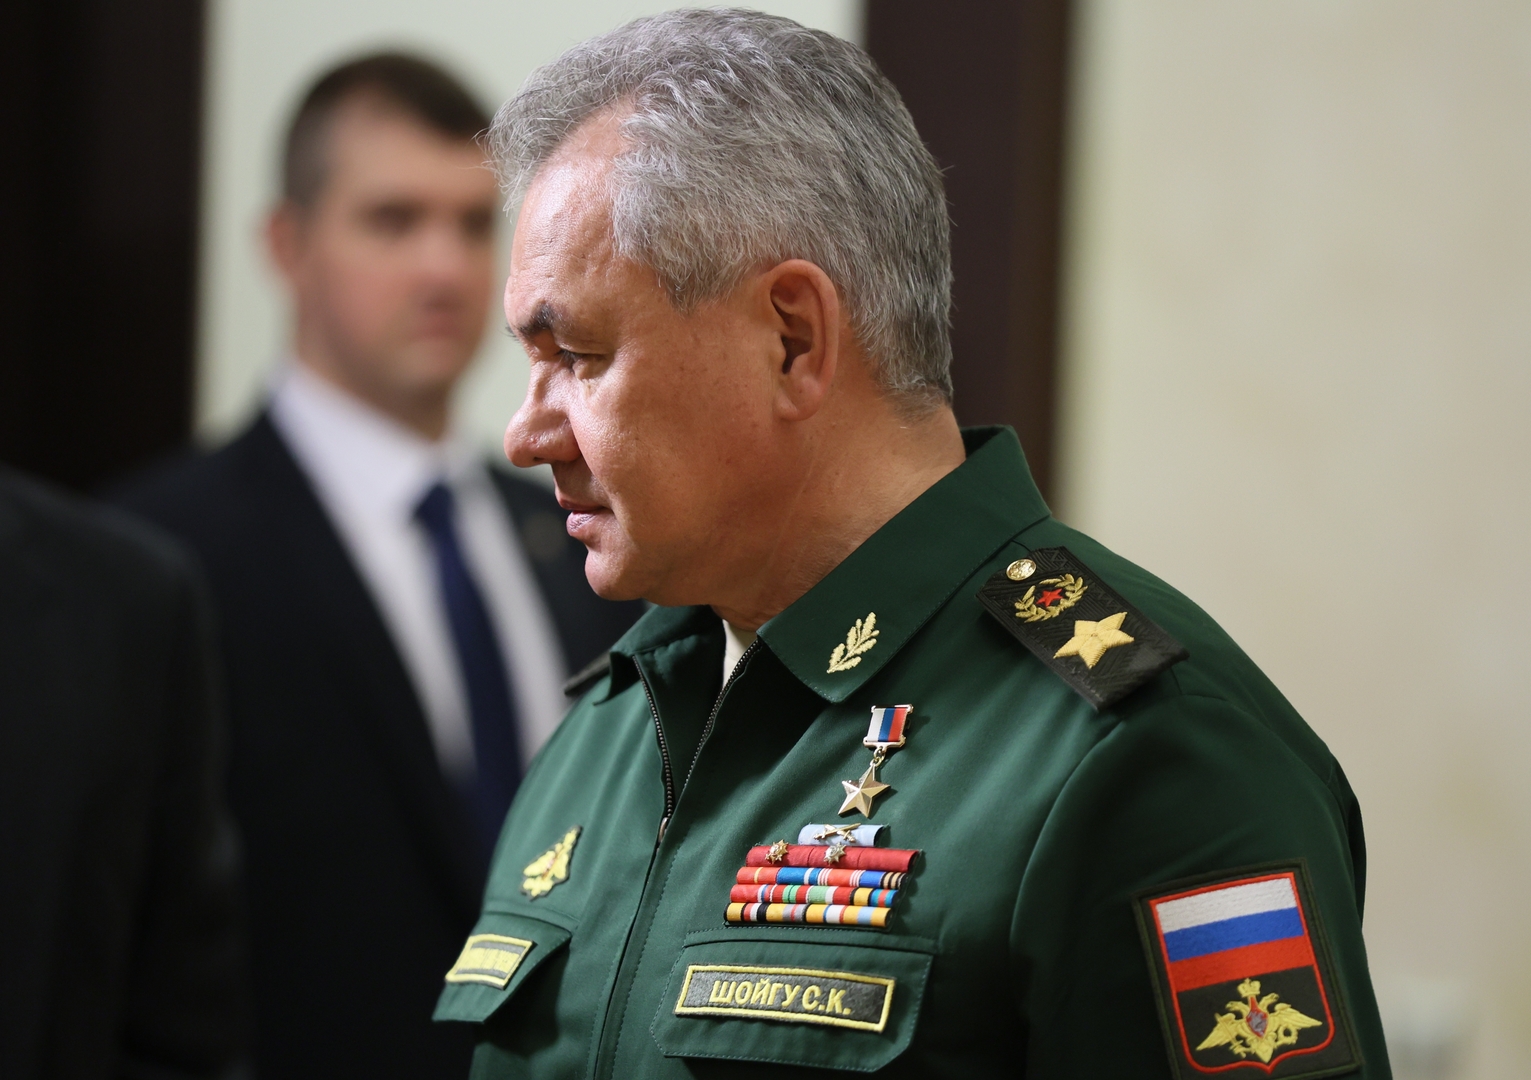 وسائل إعلام غربية: الاتحاد الأوروبي سيفرض اليوم عقوبات على وزير الدفاع الروسي